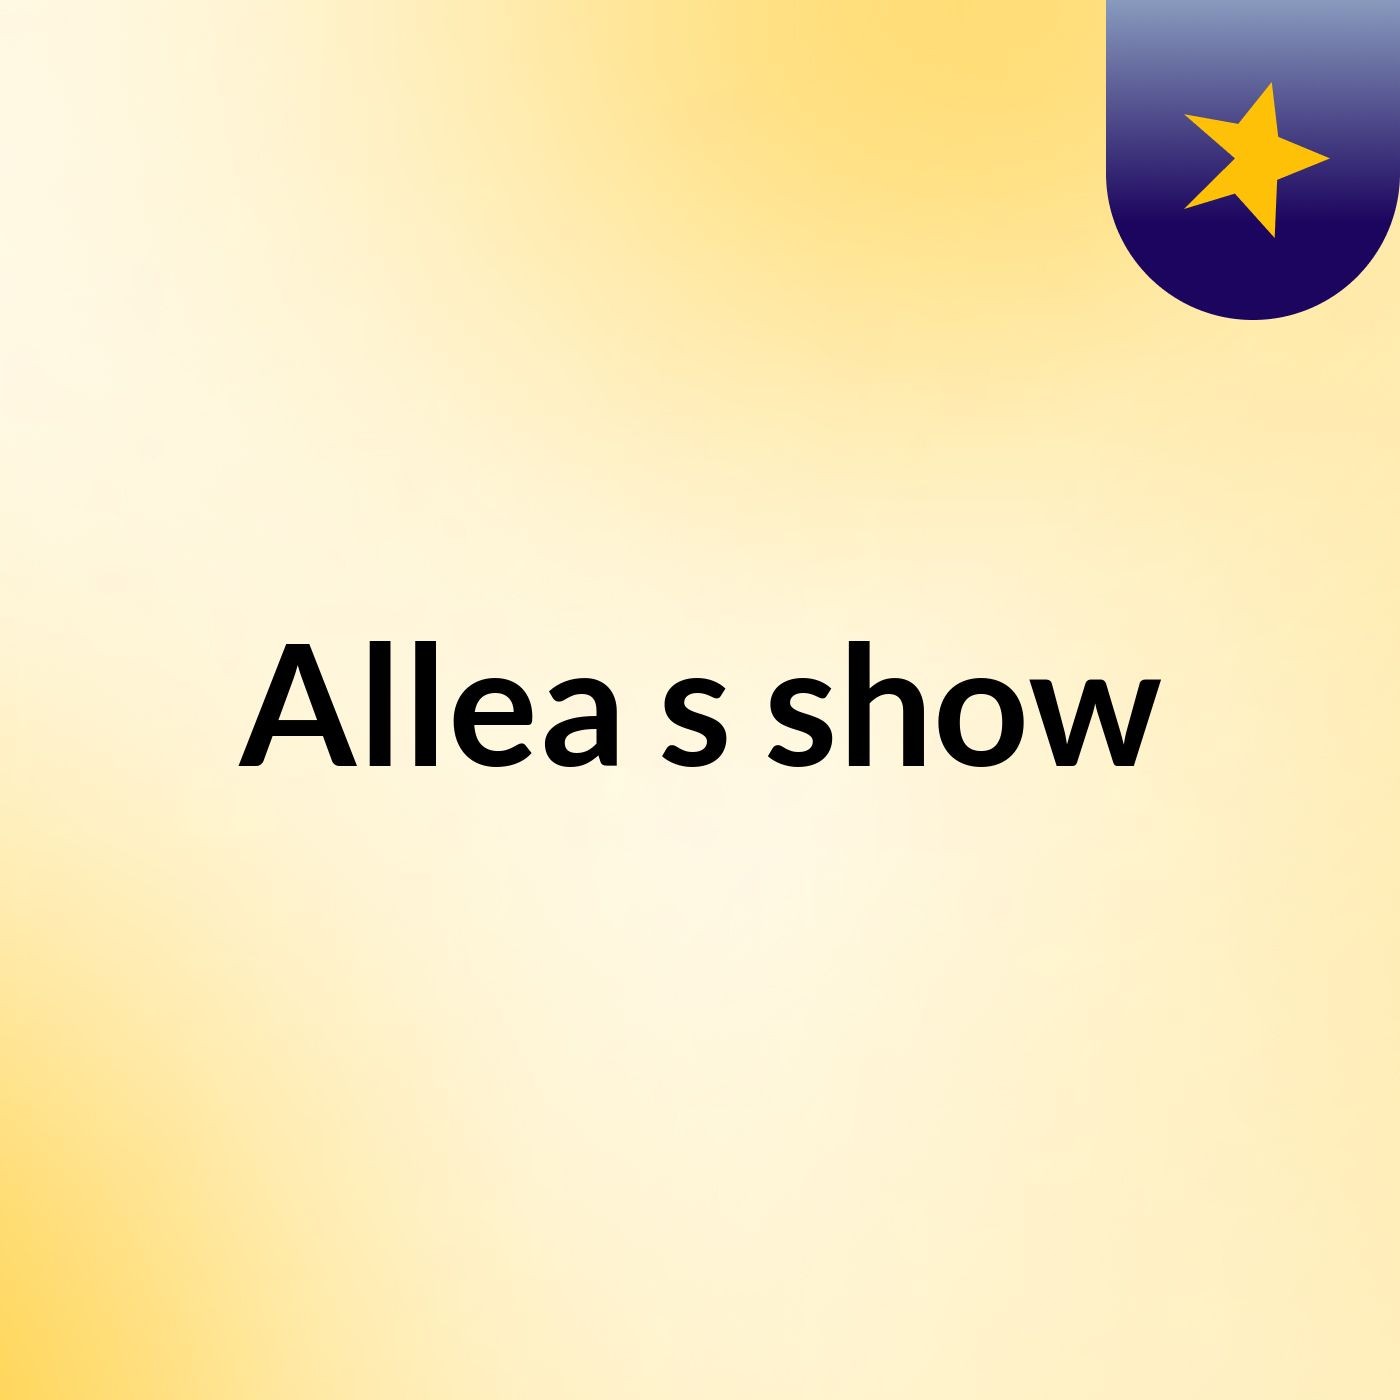 Episode 6 - Allea's show